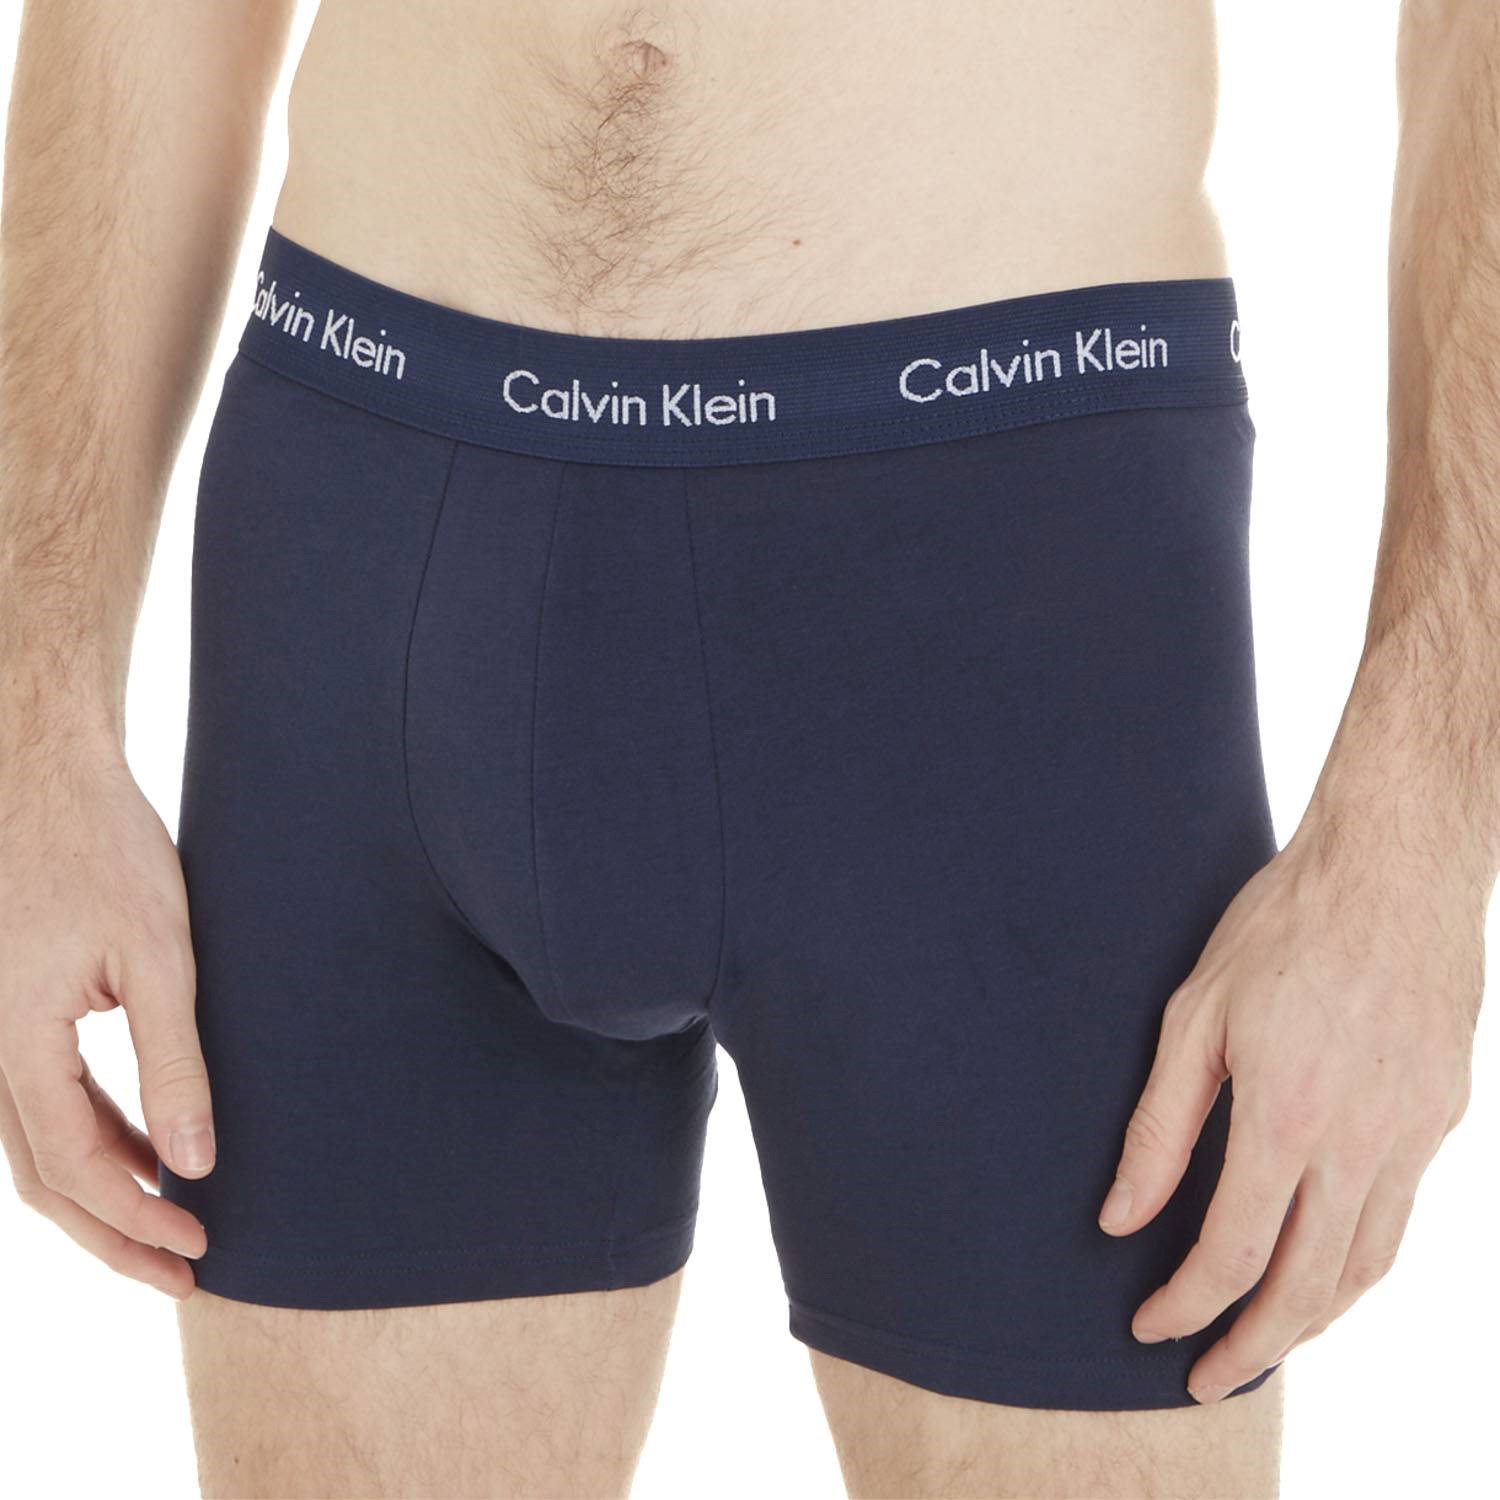 Calvin Klein Mens Underwear Cotton Stretch Boxer Briefs,Black s/p/ch